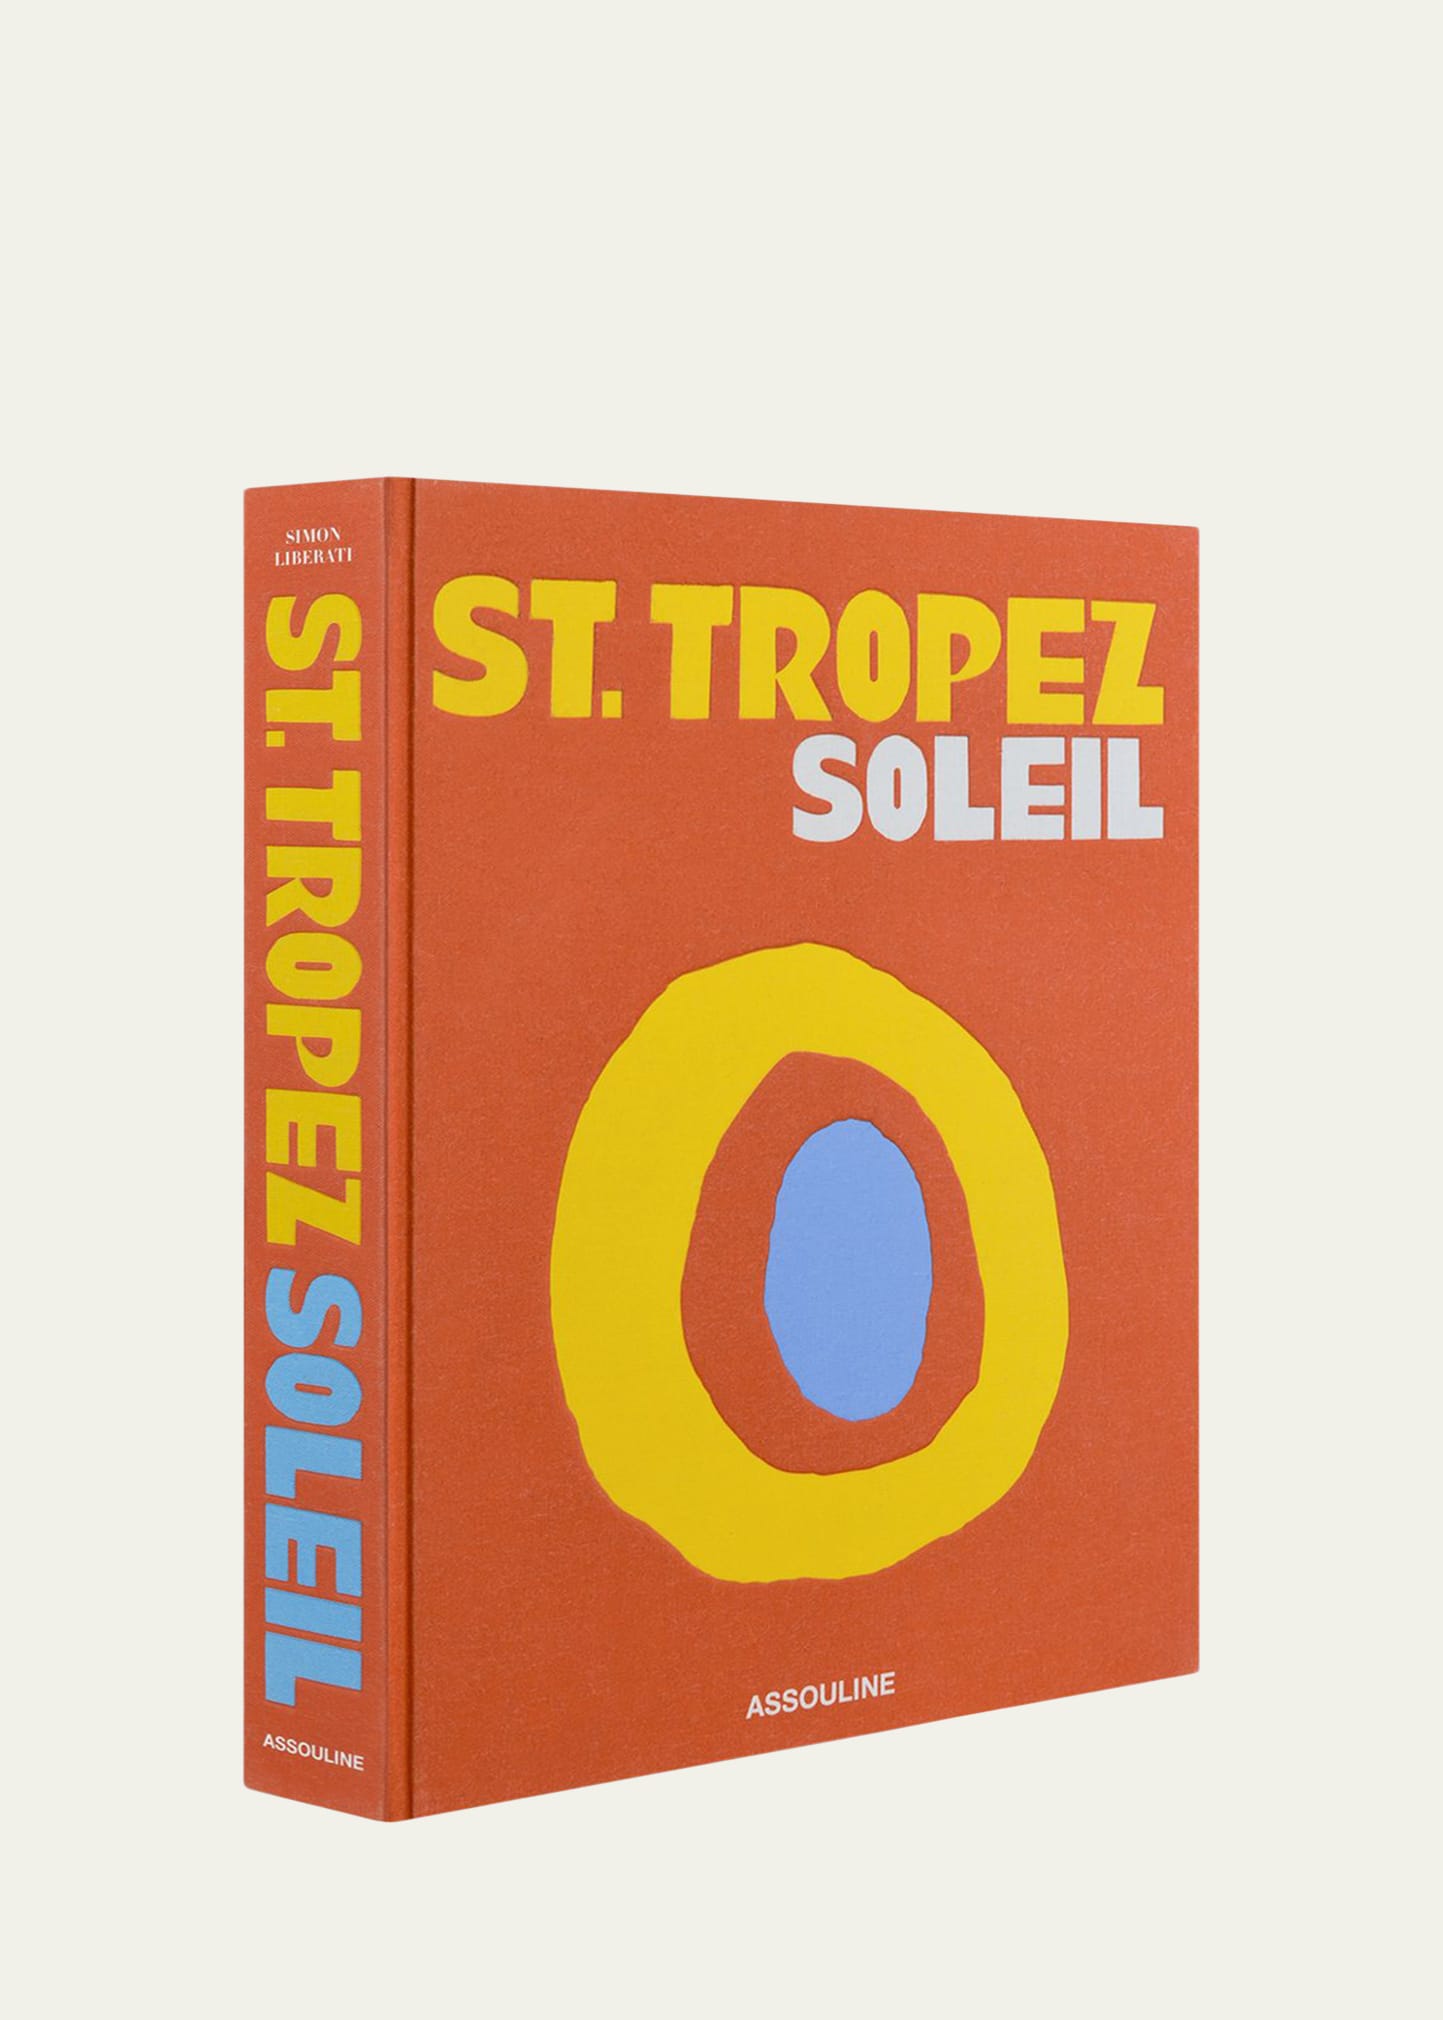 "St. Tropez Soleil" Book